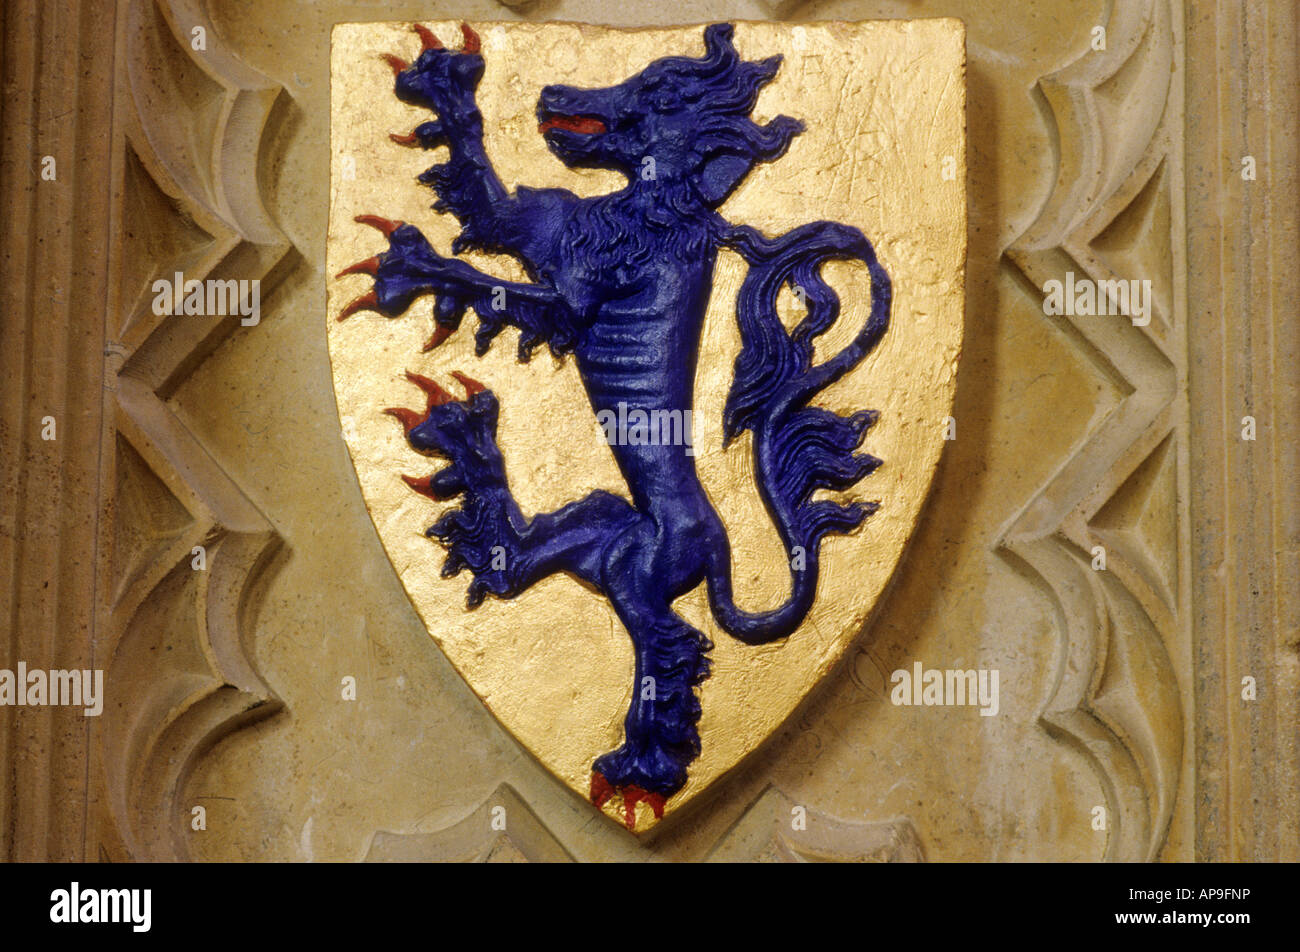 Armoiries lion rampant bleu bouclier d'or de la cathédrale de Lincoln Lincolnshire Angleterre IK périphérique histoire médiévale héraldique héraldique Banque D'Images